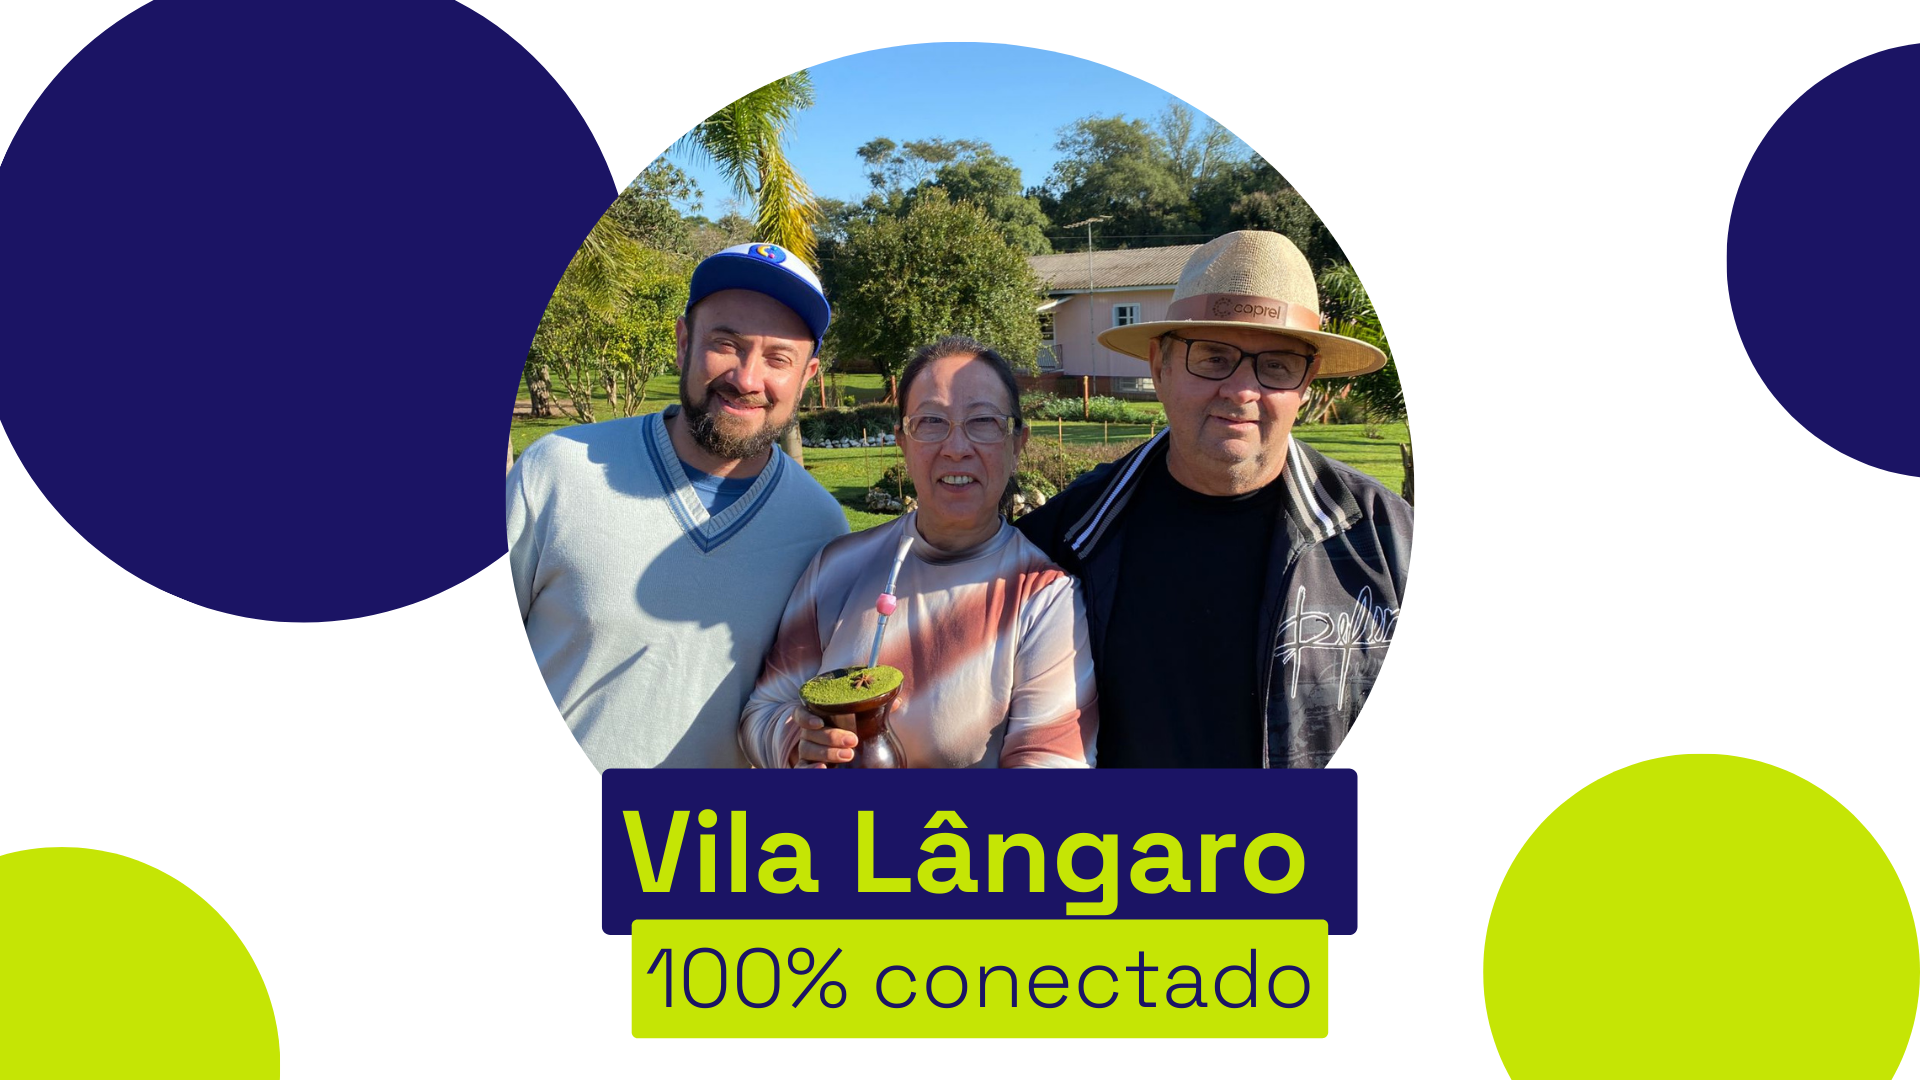 Vila Lângaro está 100% conectado com a Coprel